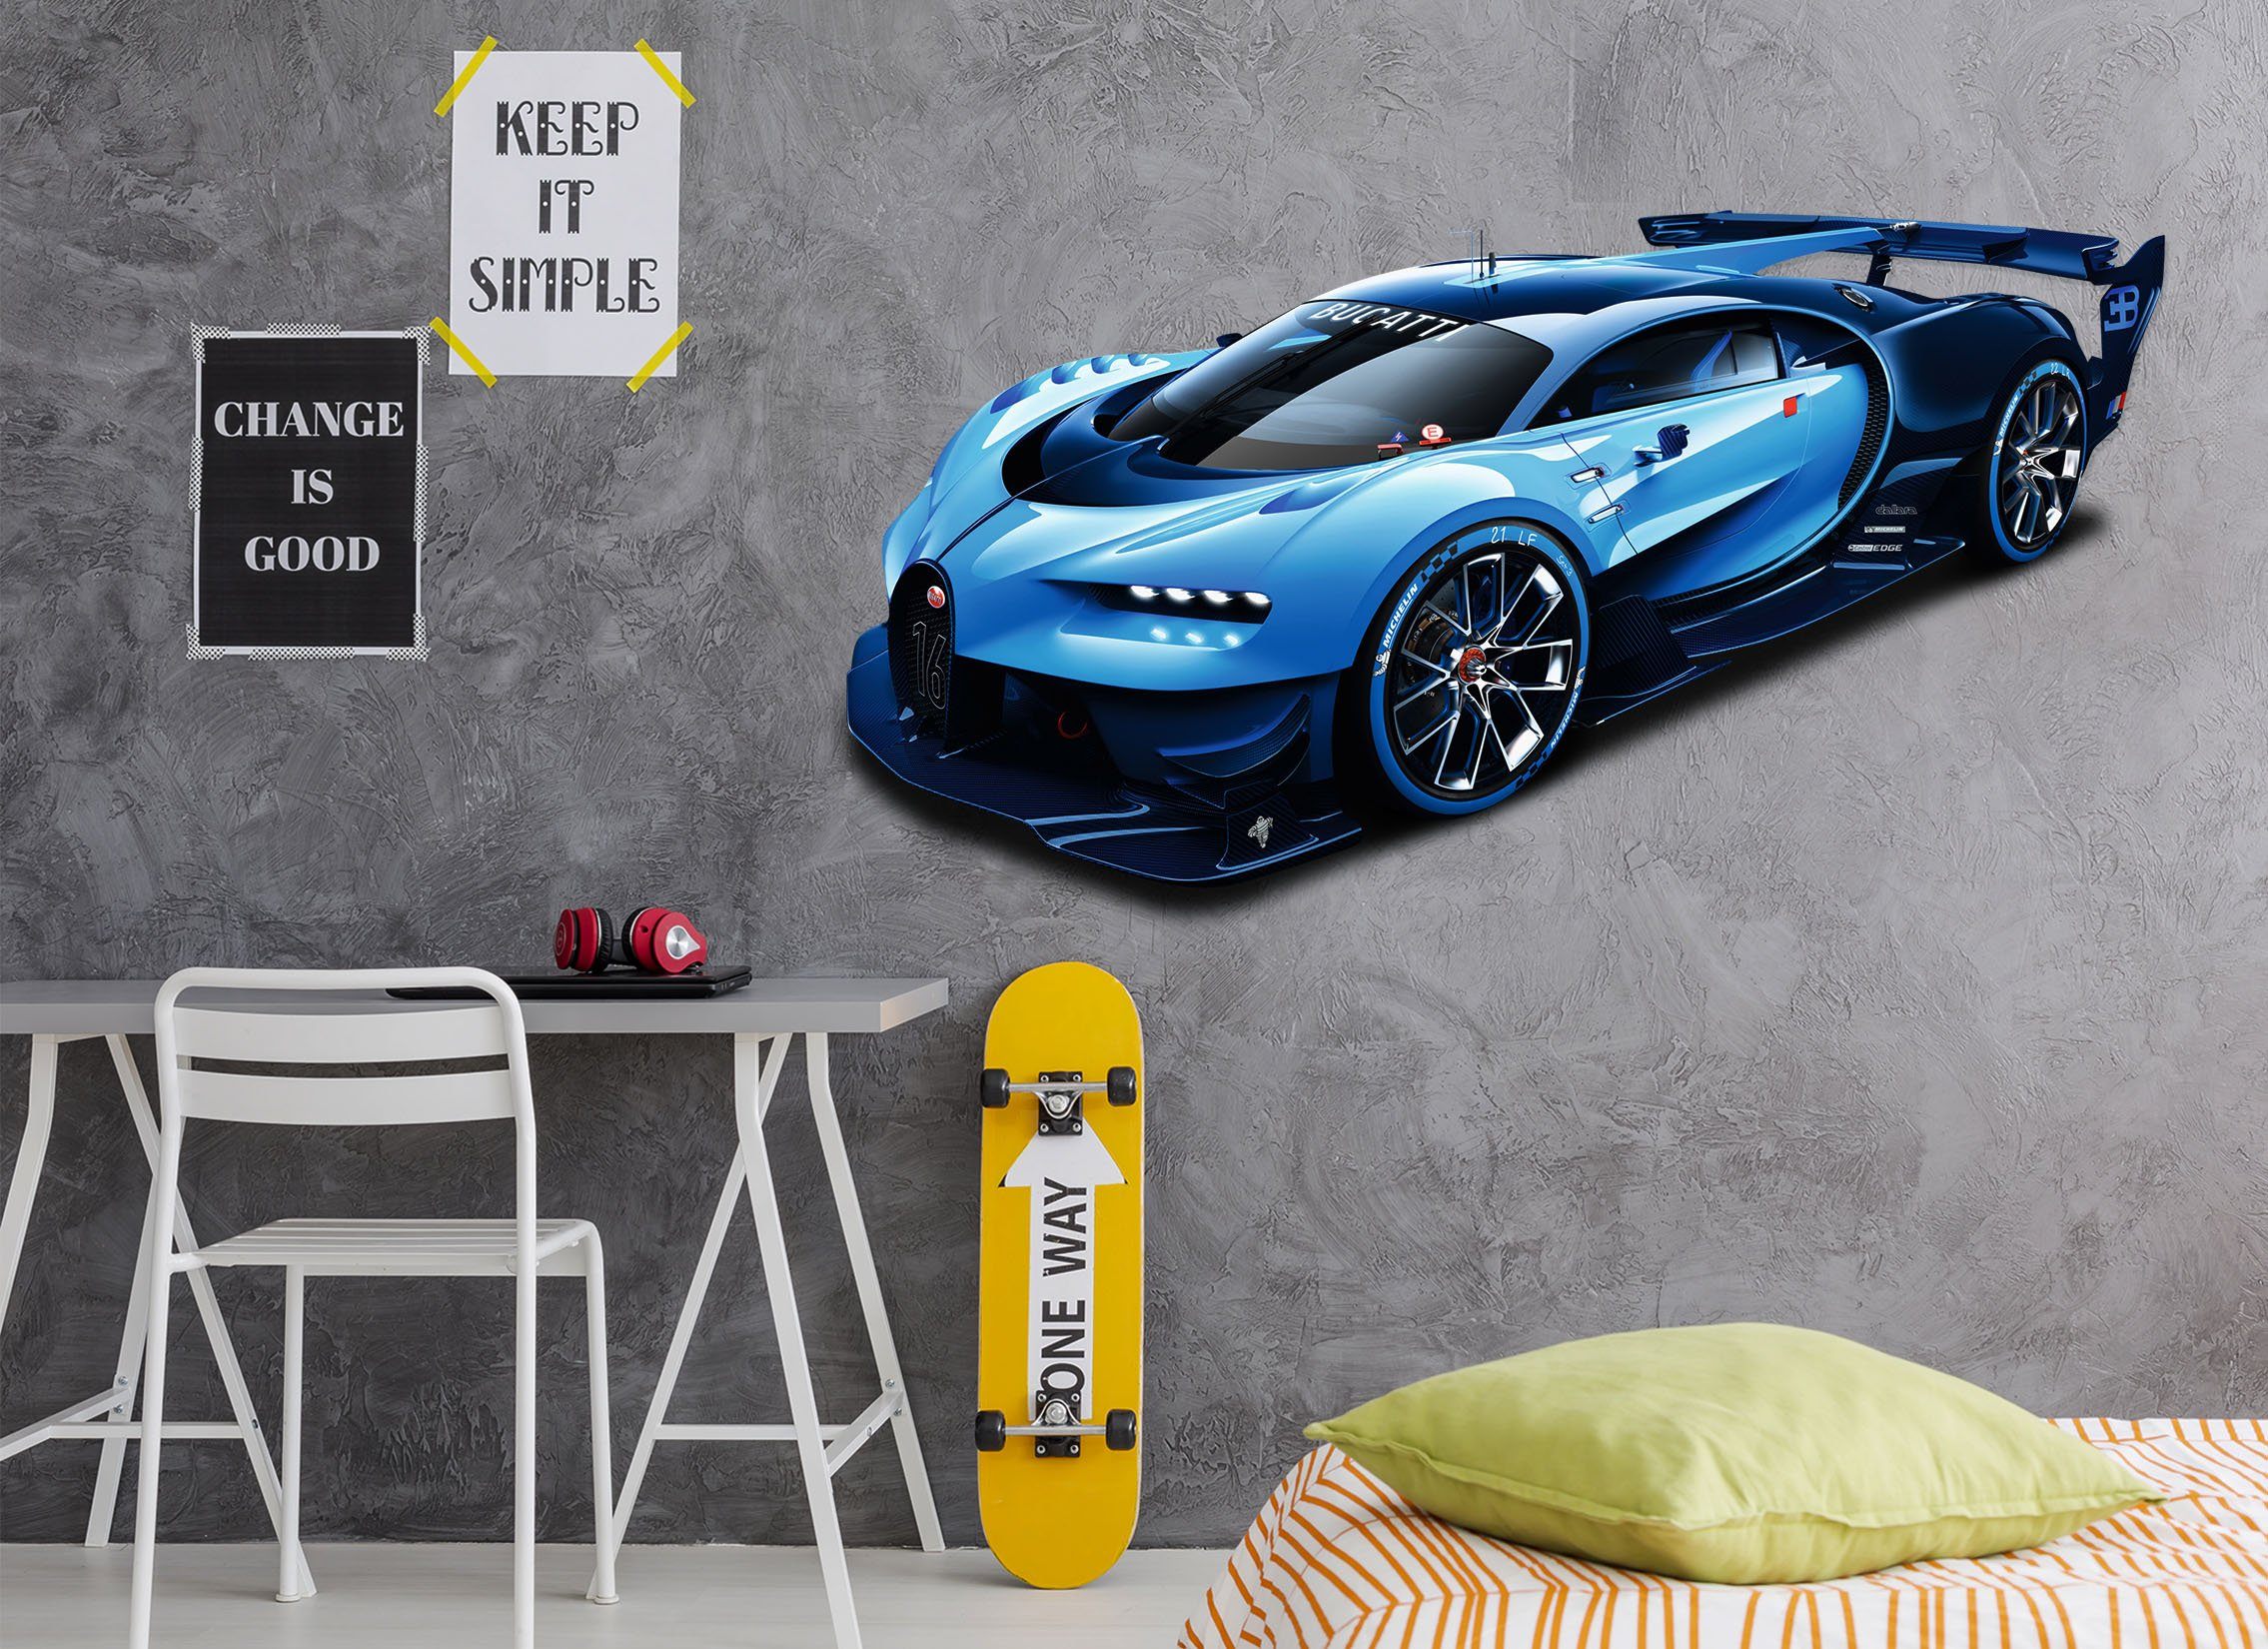 3D Bugatti Veyron Precio 165 Vehicles Wallpaper AJ Wallpaper 